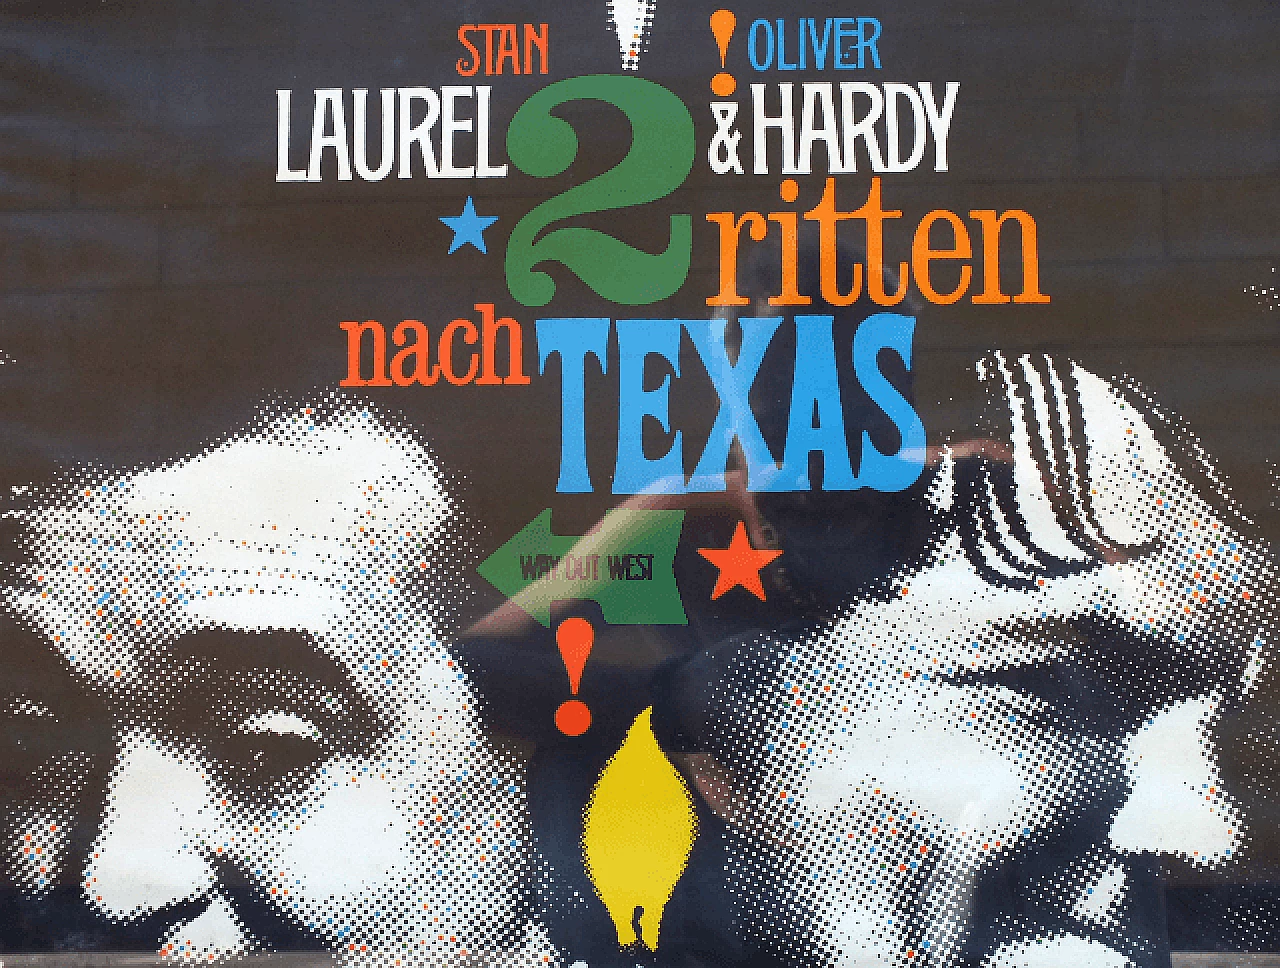 Laurel & Hardy - Zwei ritten nach Texas movie poster, 1960s 1